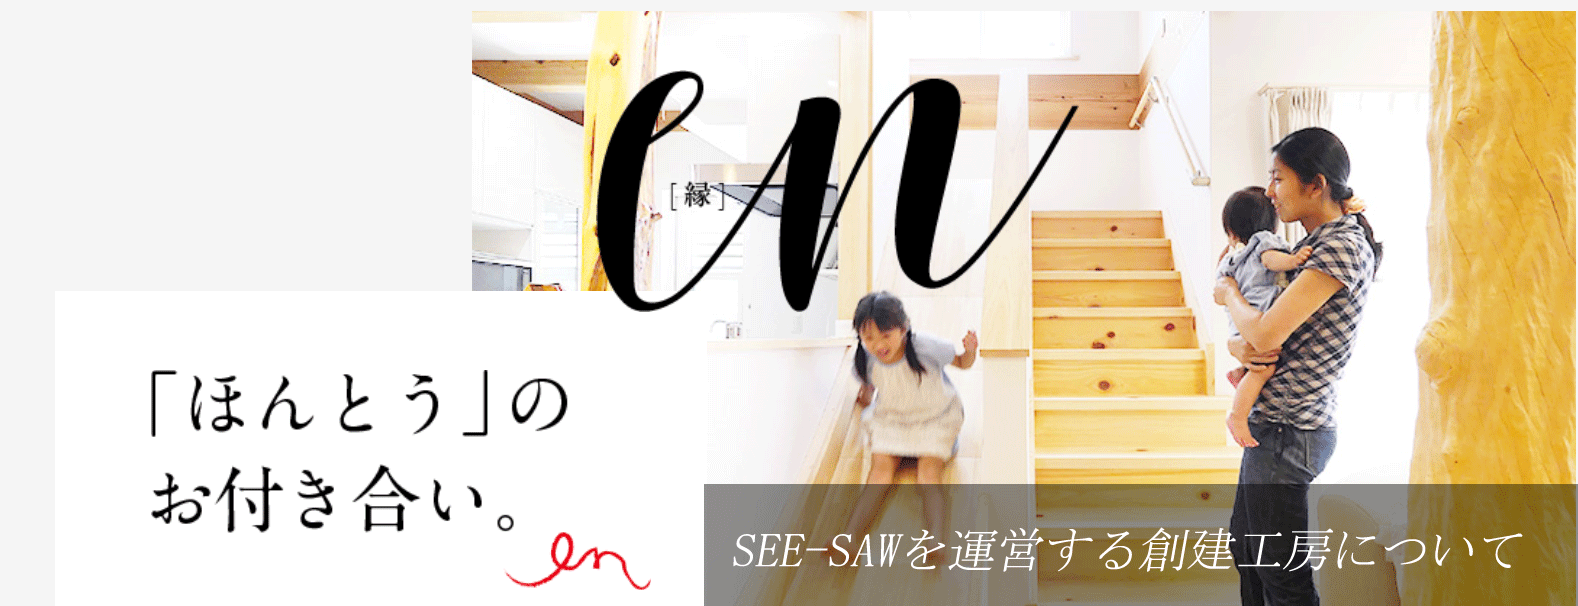 大阪の一枚板工房SEE−SAW 創建工房について